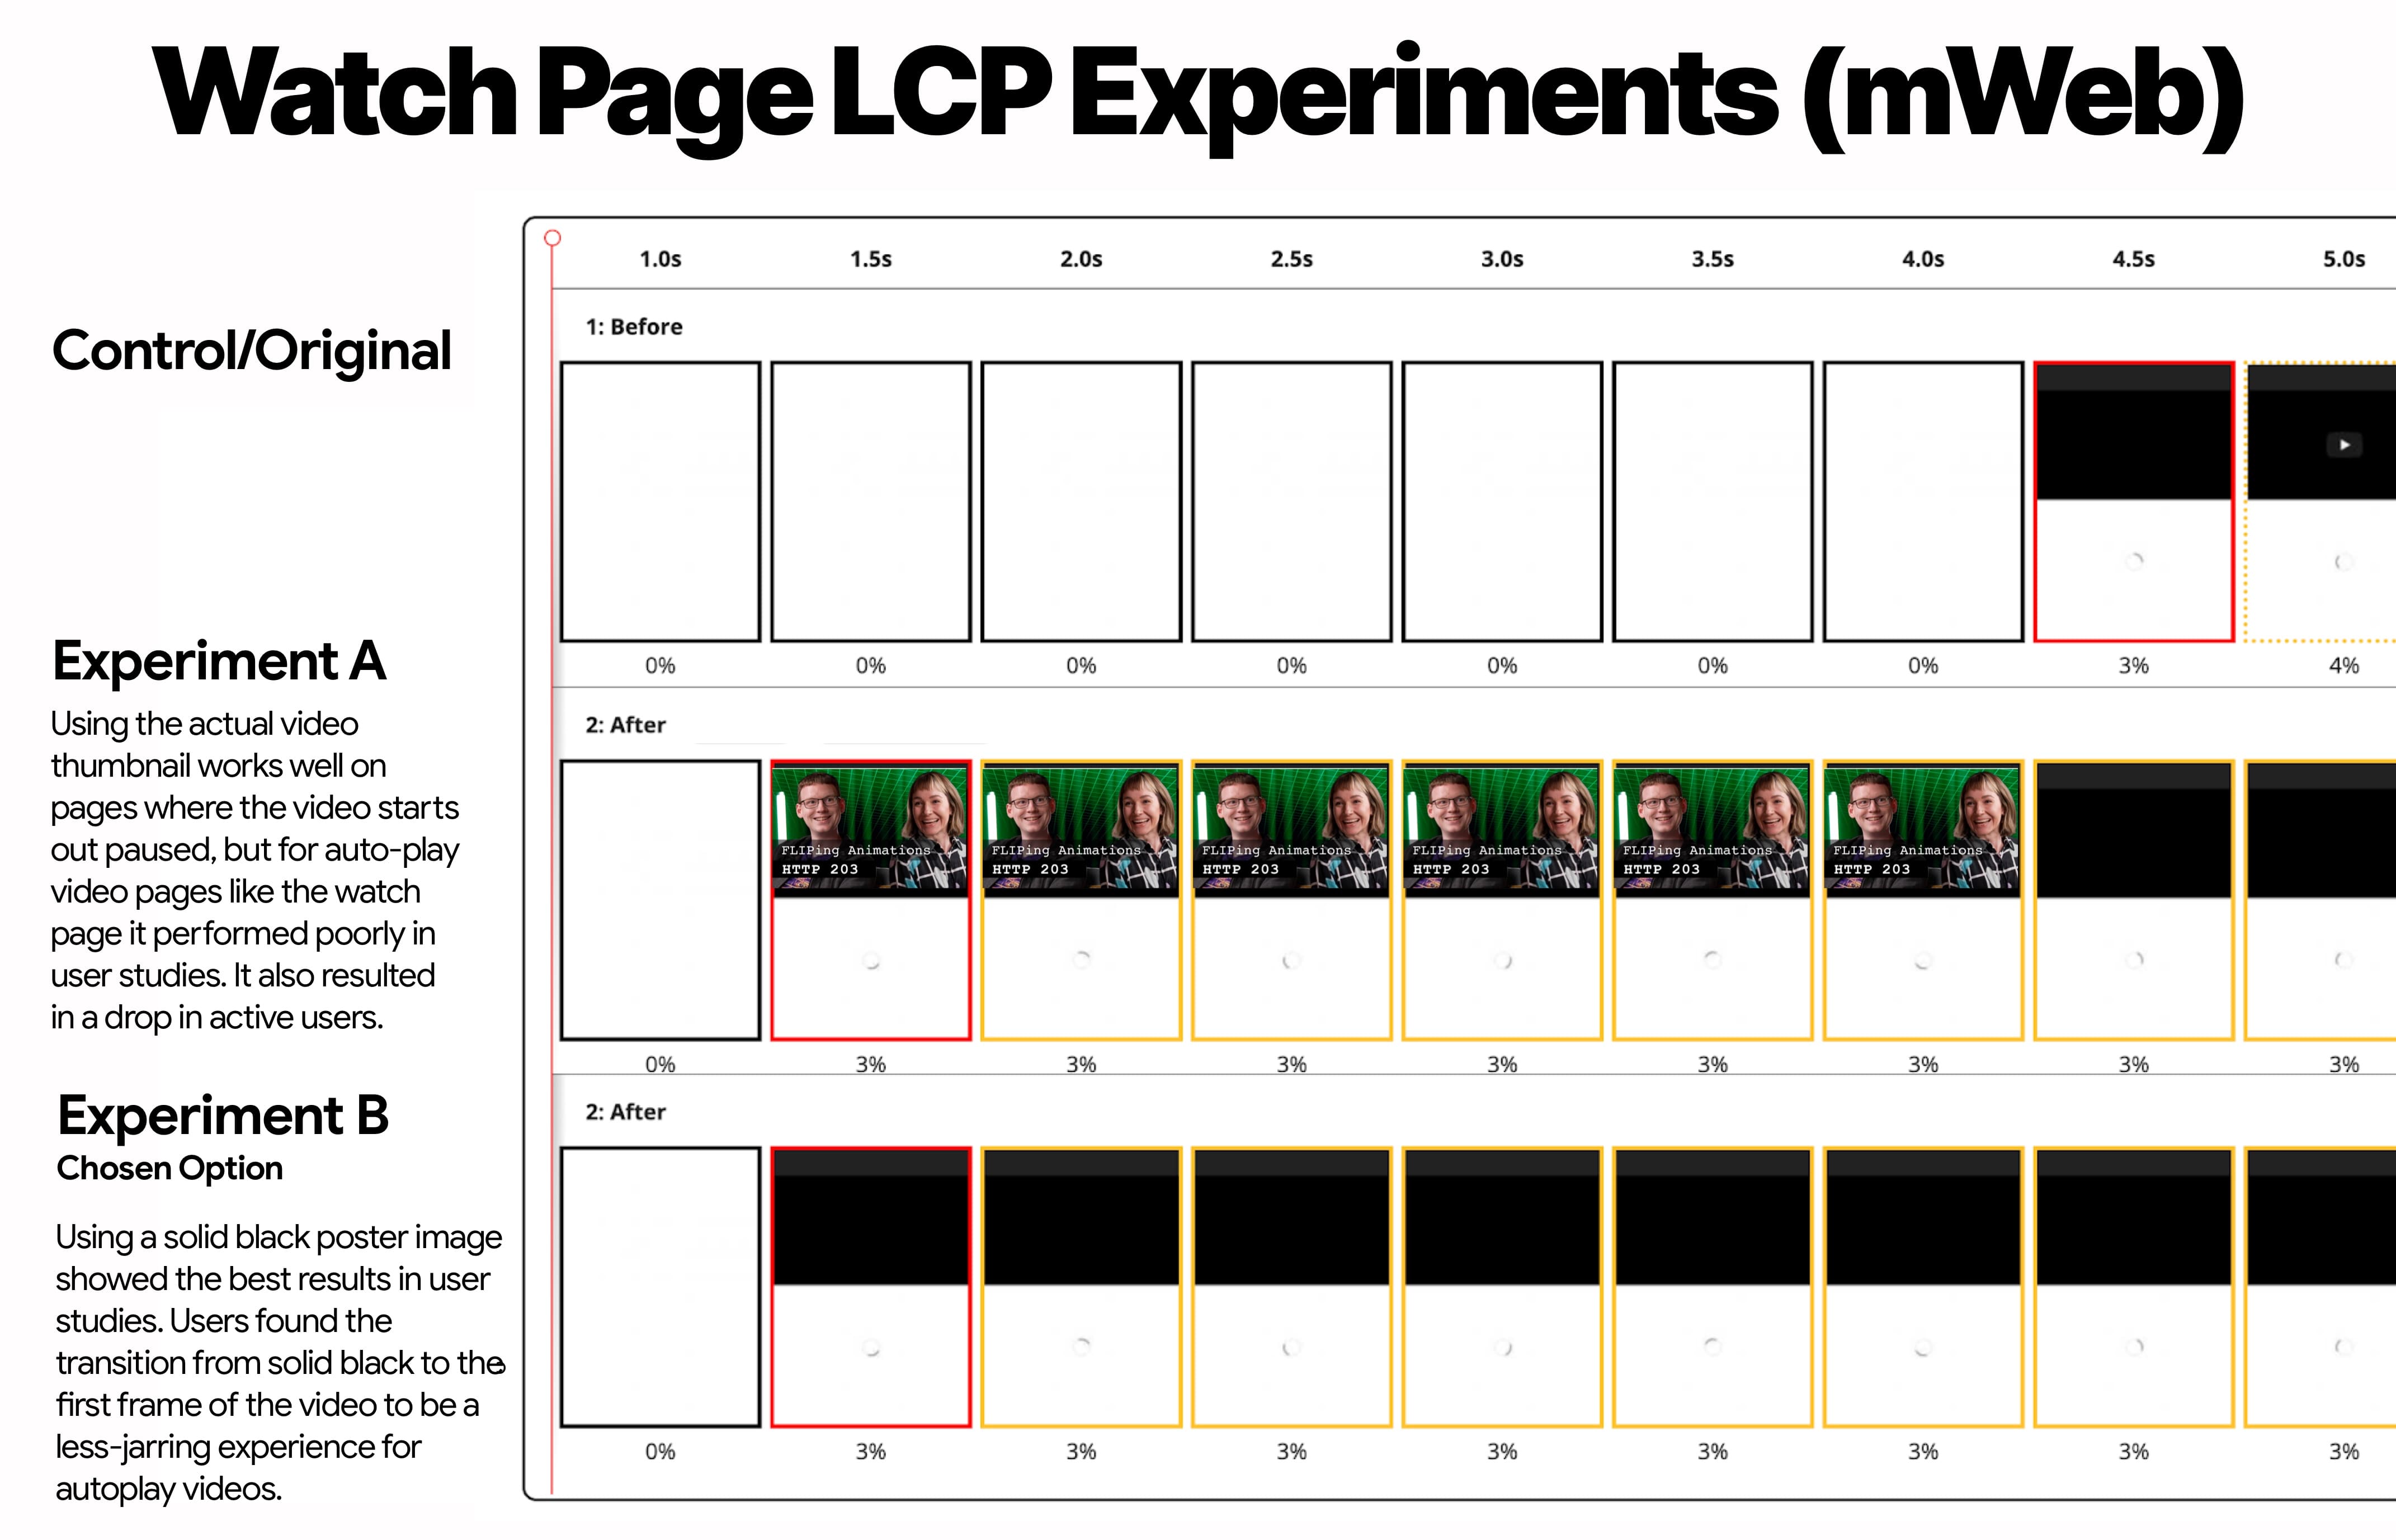 移动网站的观看页面 LCP 实验，其中显示了对照组、实验组 A（图片缩略图）和实验组 B（黑色缩略图）